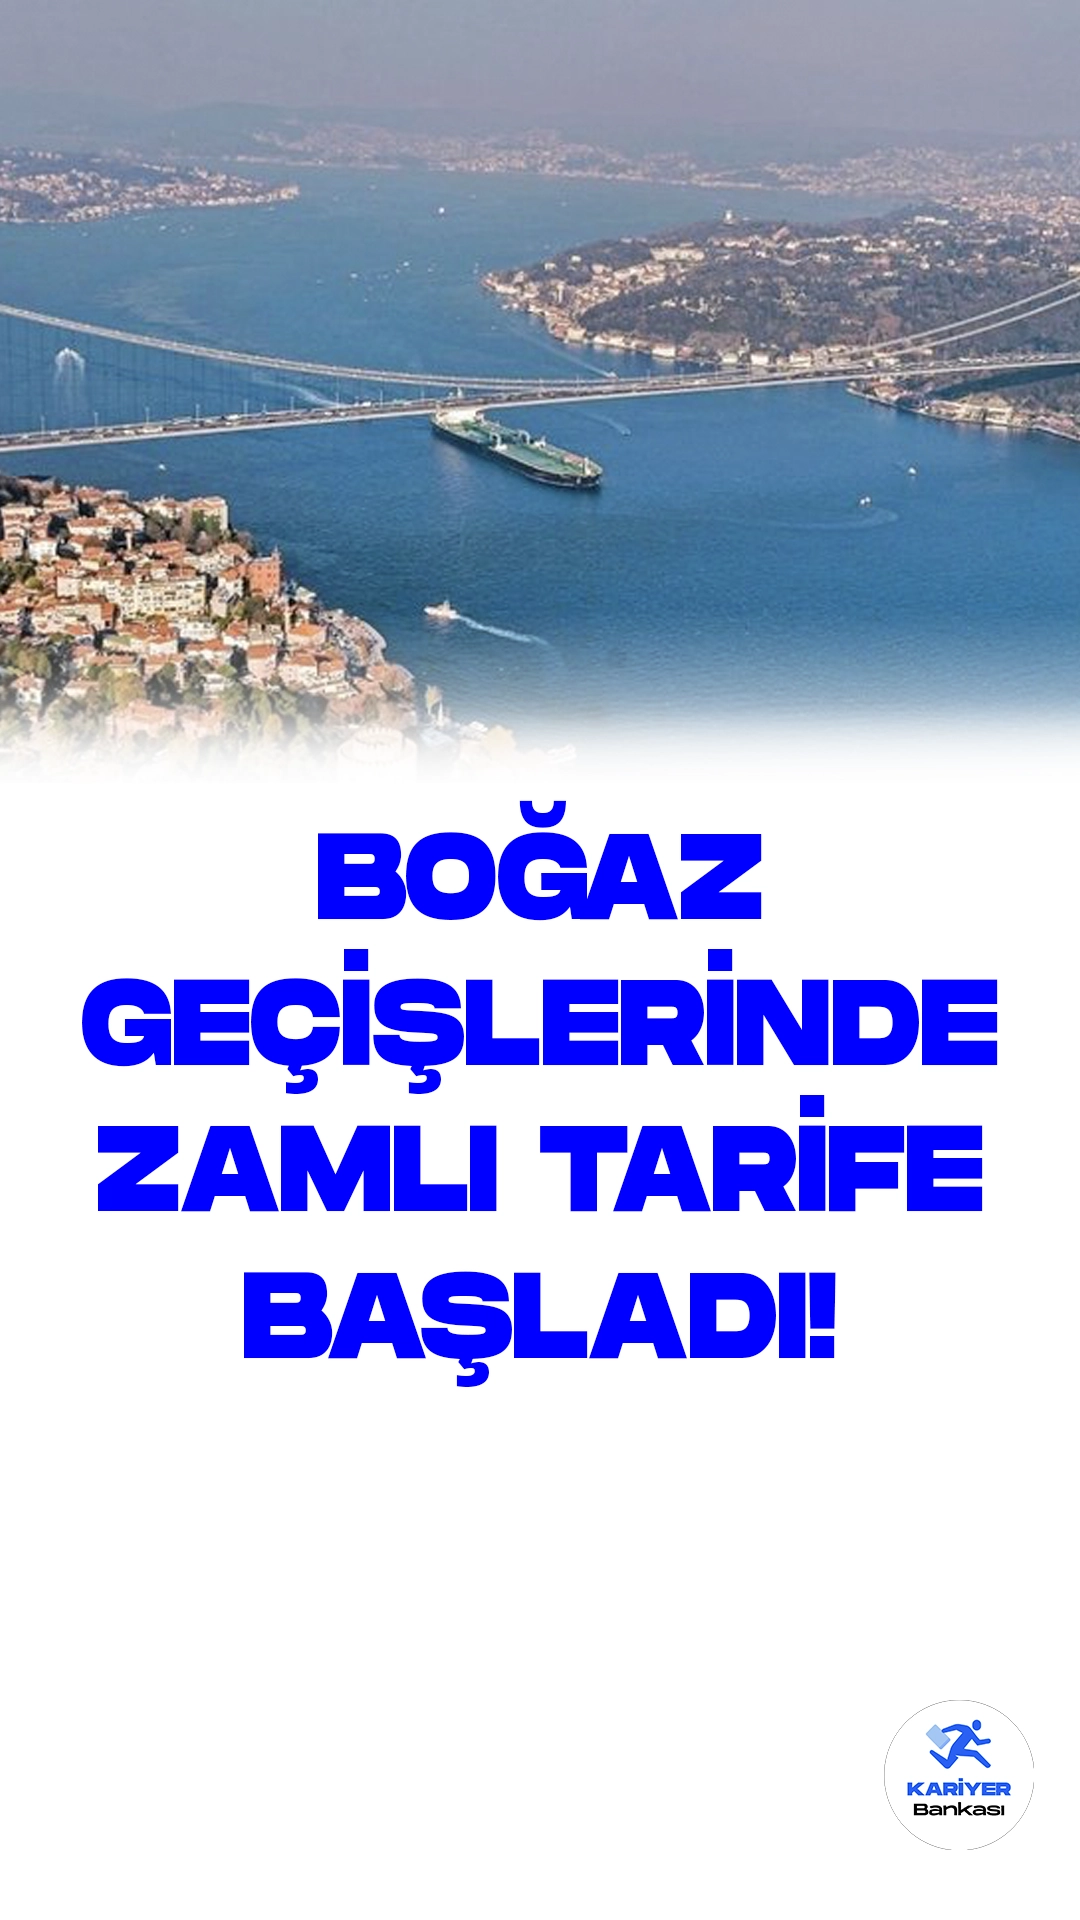 Türk Boğazları'ndan Geçen Uluslararası Gemiler İçin Ücretlerde Zam Başladı.Bugün itibarıyla, Türk boğazlarından uğraksız bir şekilde geçen uluslararası gemilerden alınacak ücretlere zam yapıldı. Artık gemi başına net ton başına 4,42 dolar ödeme yapılacak.